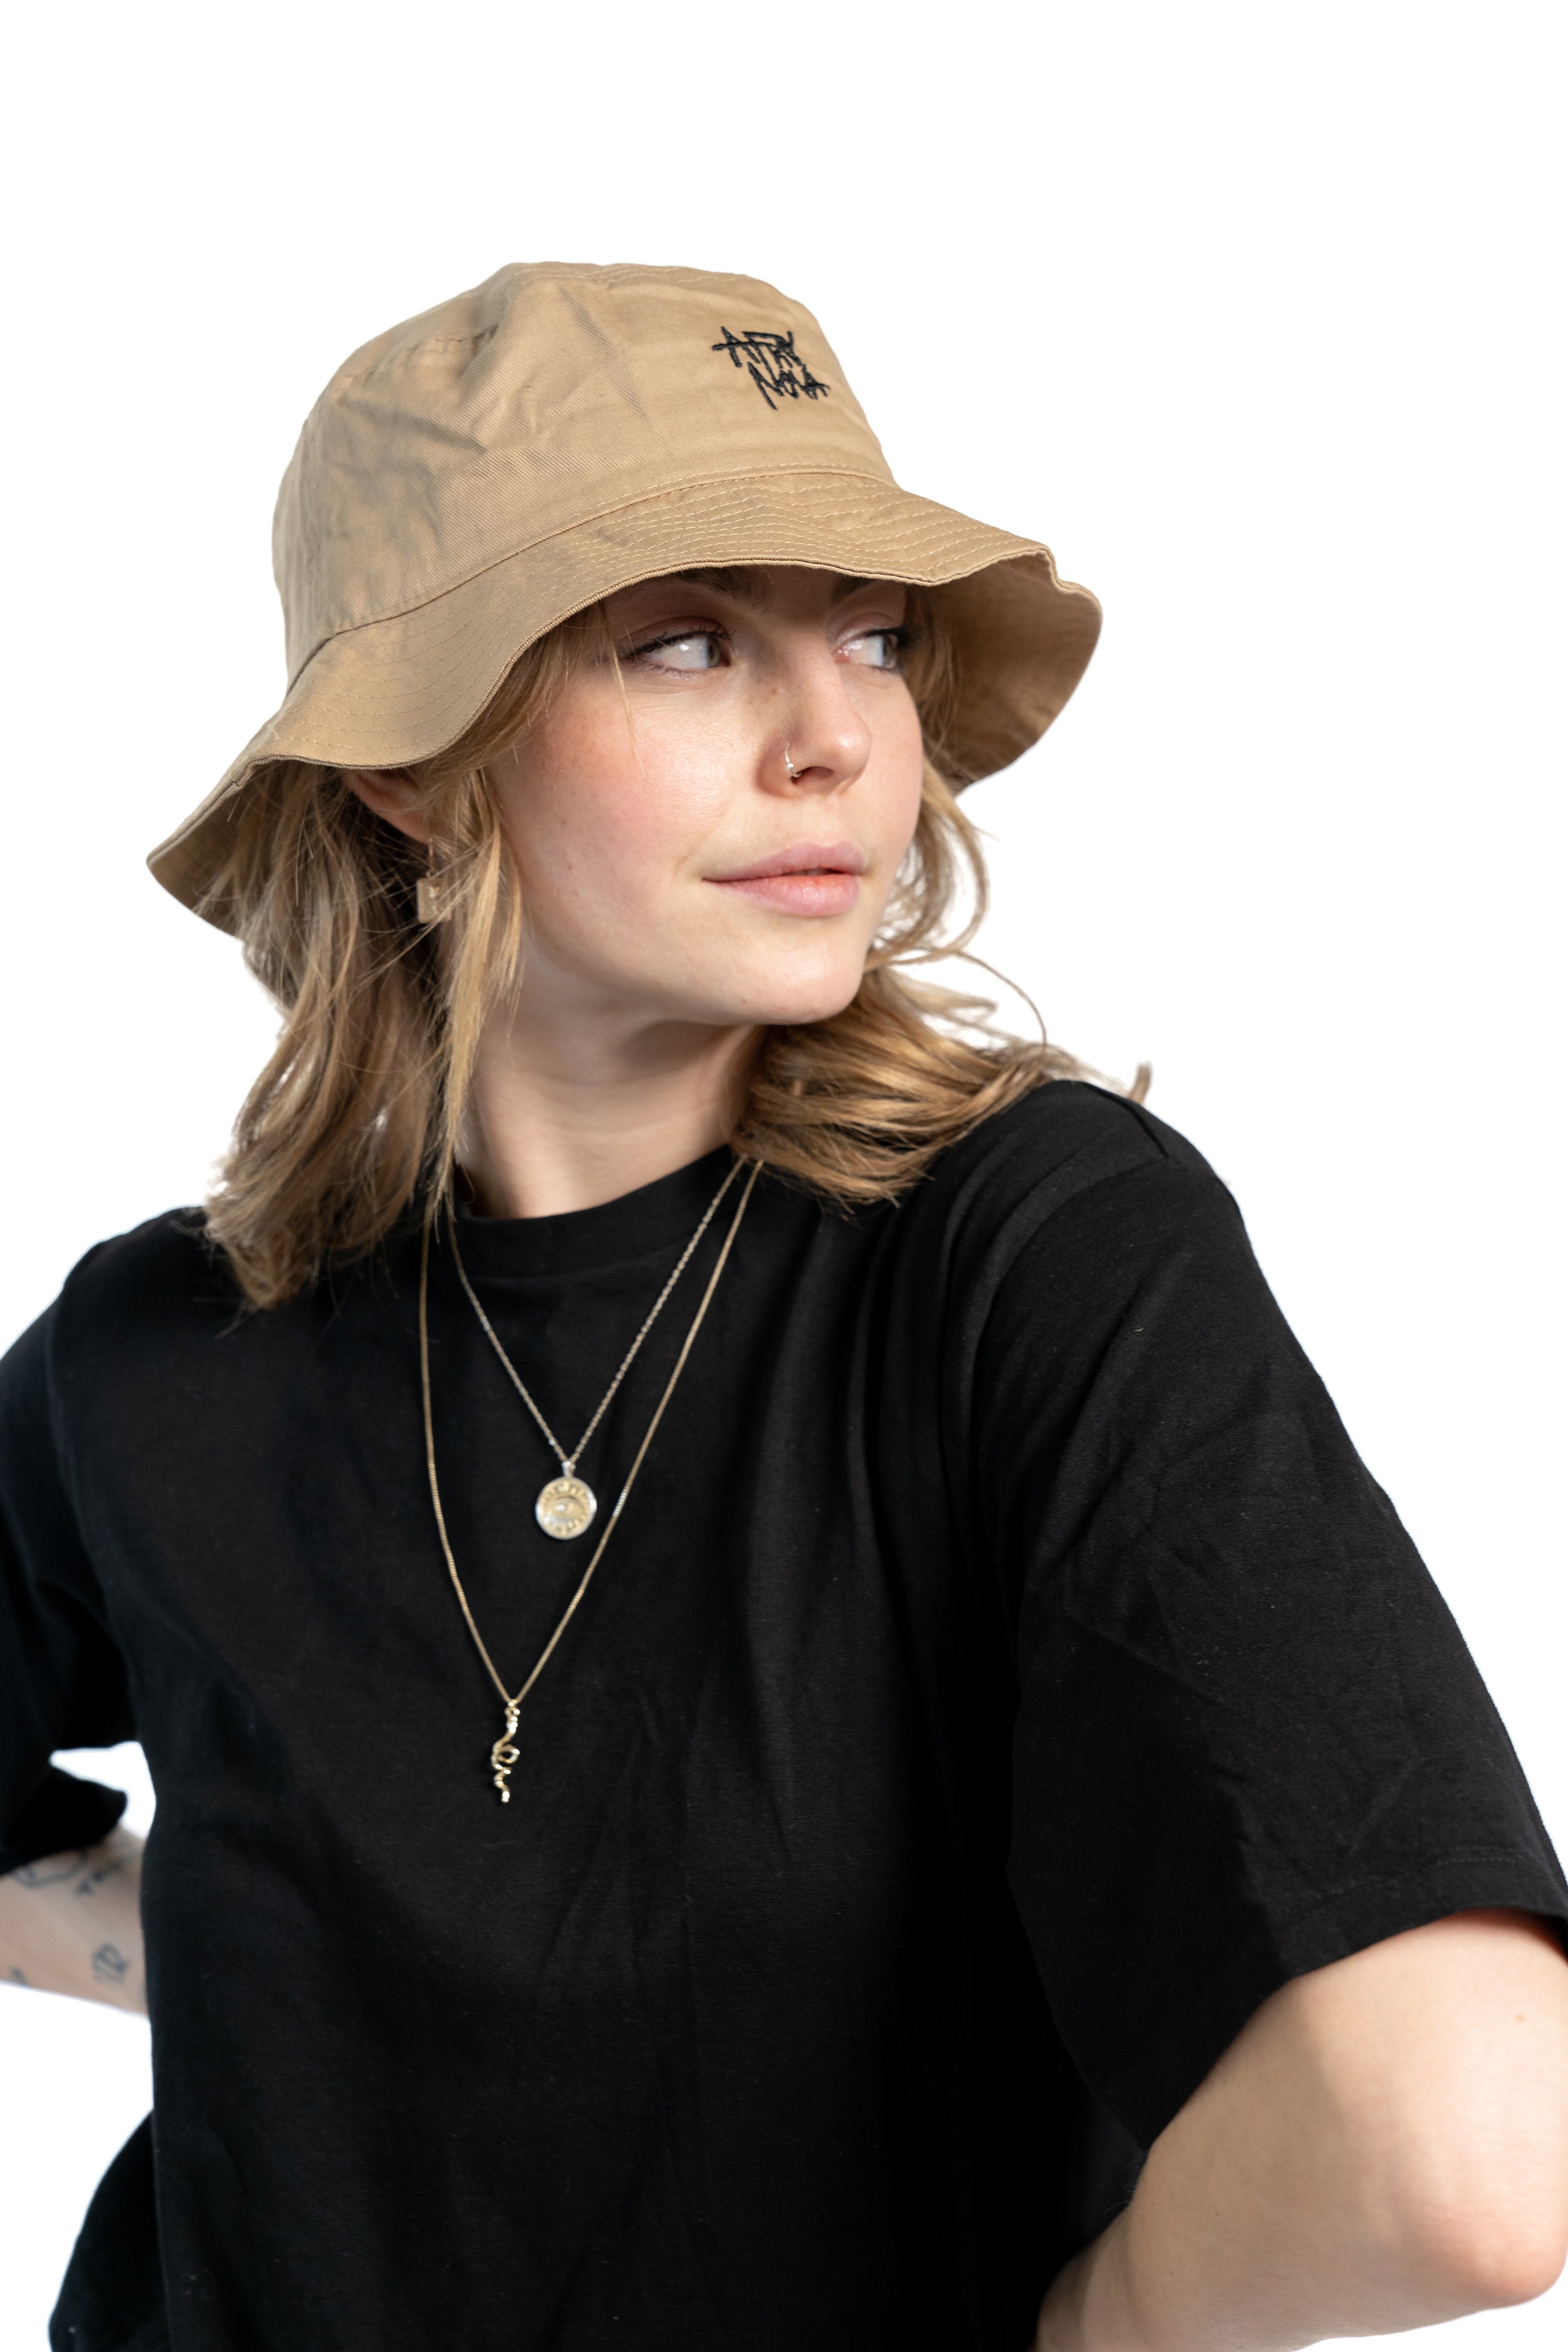 Frau mit blonden Haaren und schwarzem T-Shirt trägt einen beigen Fischerhut